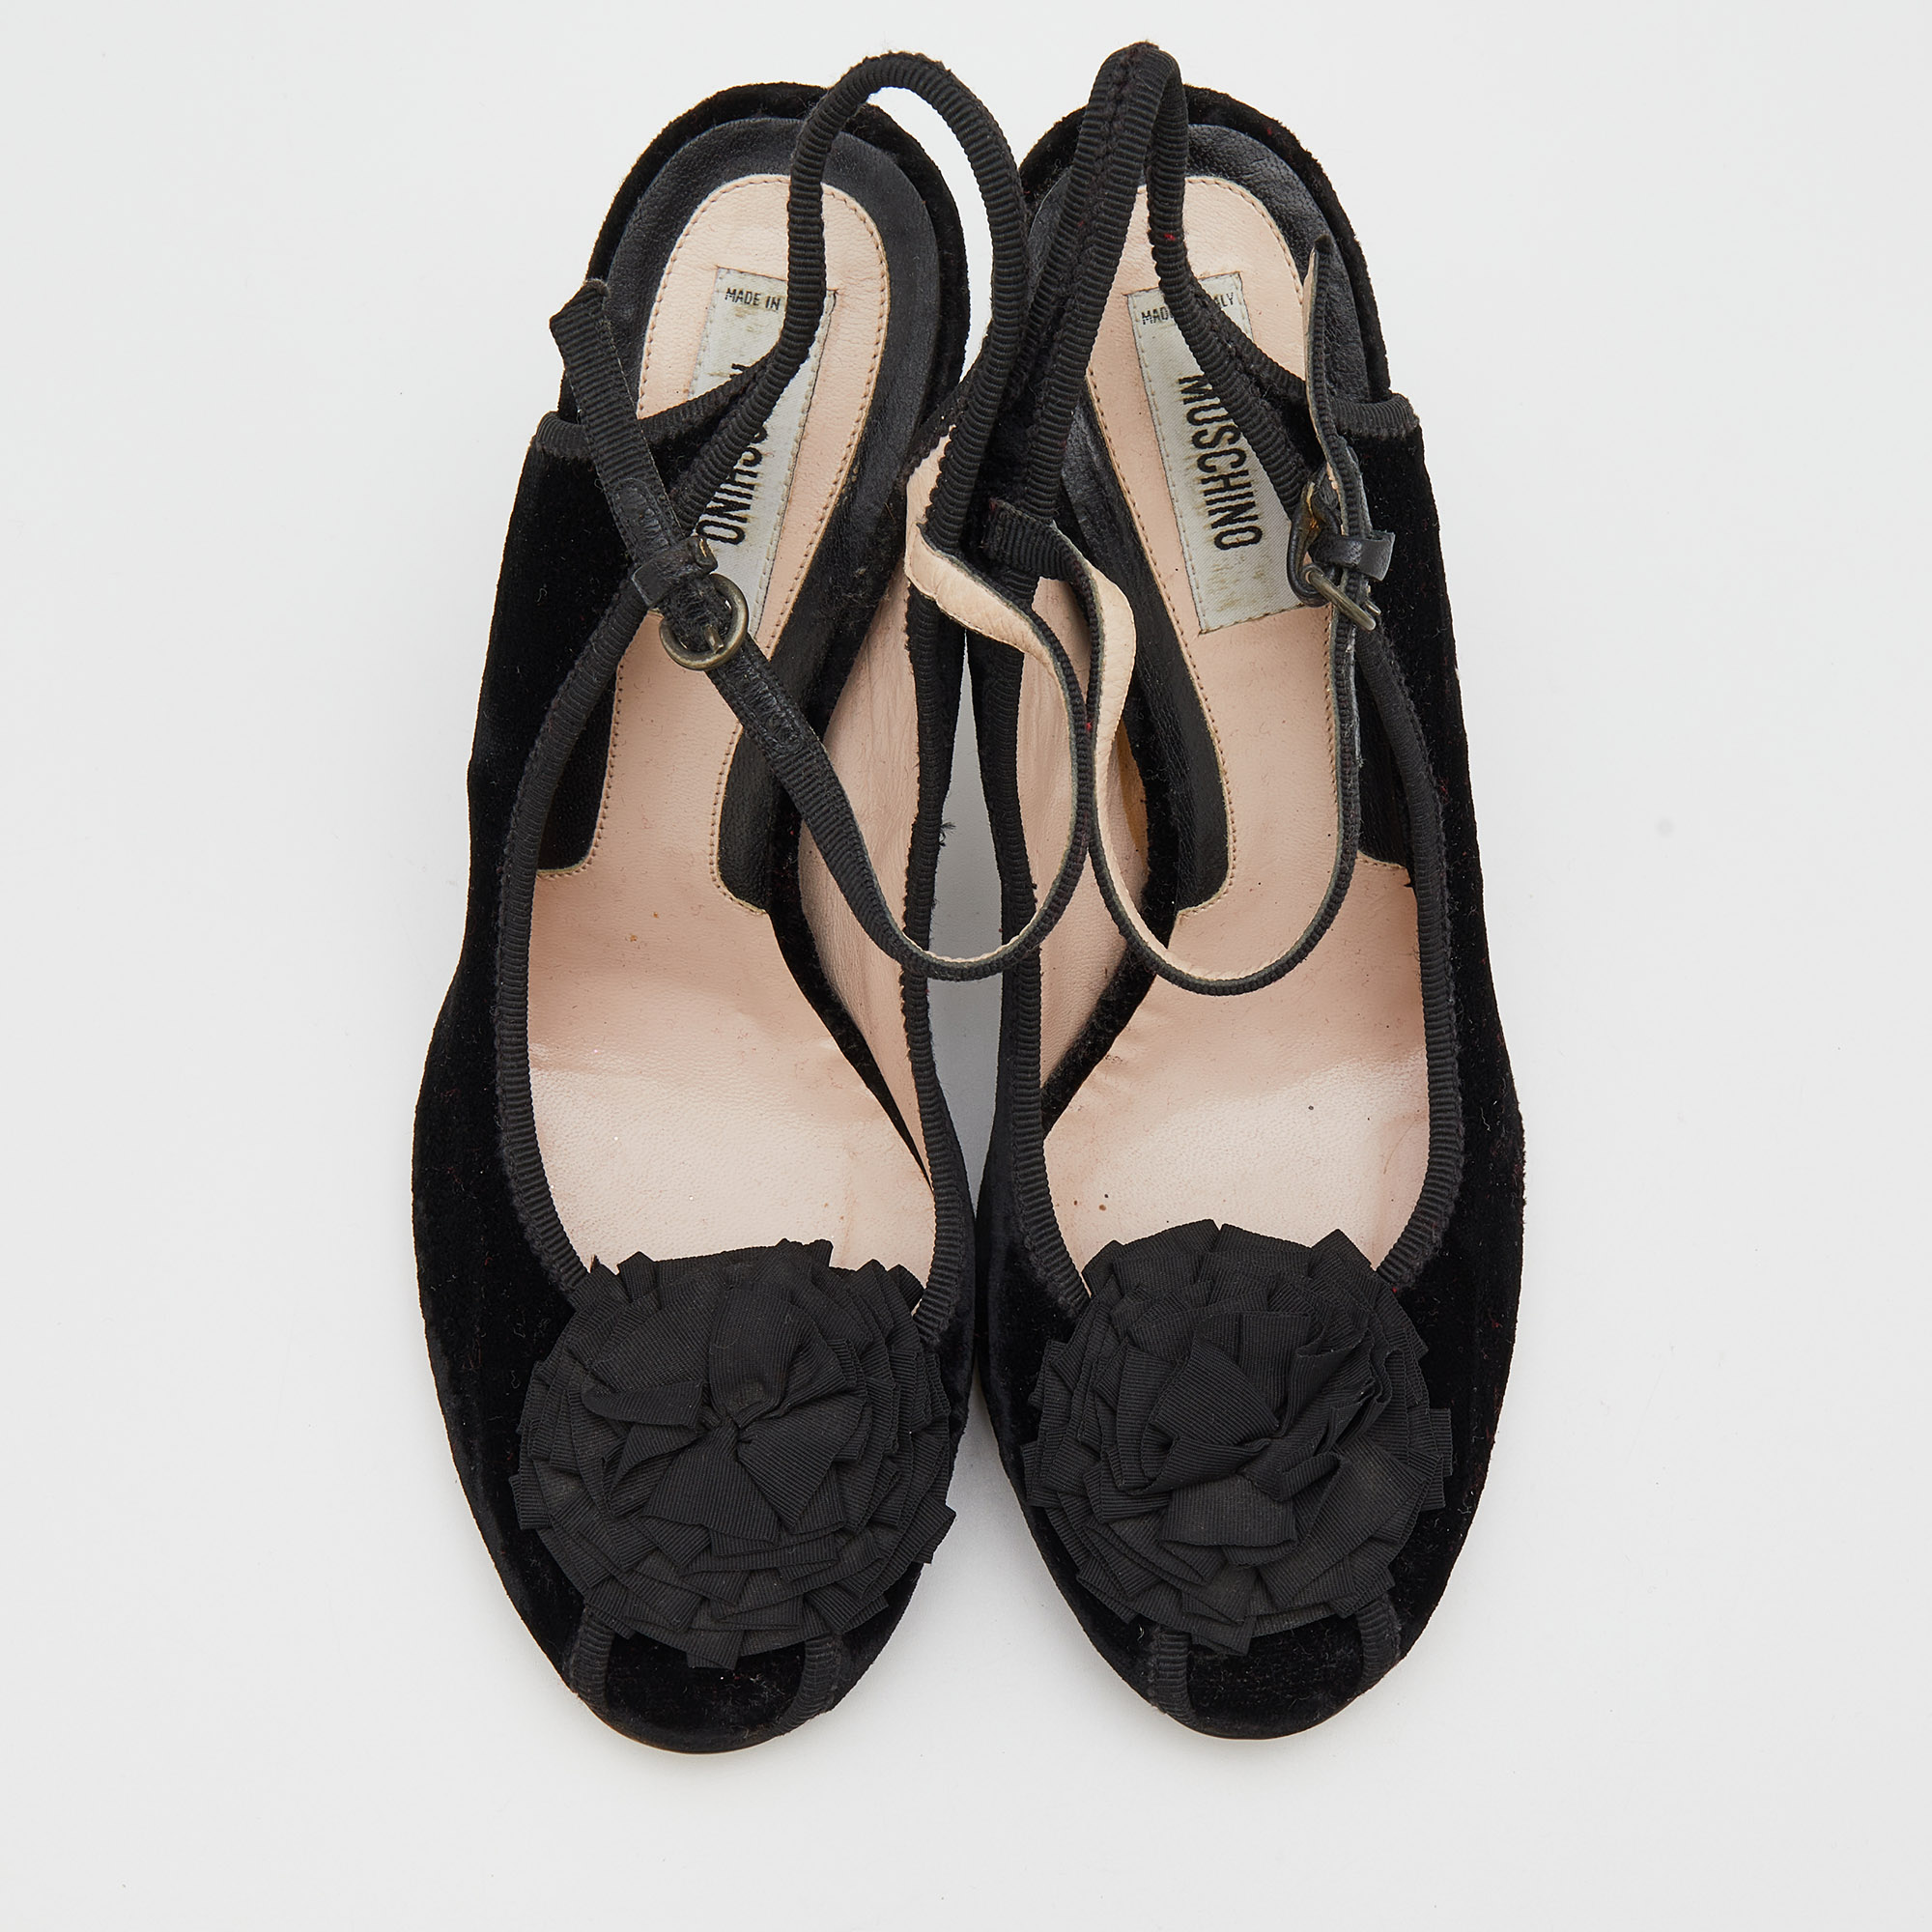 Moschino Black Velvet Flower Embellished Mary Jane Peep Toe Sandals Size 38